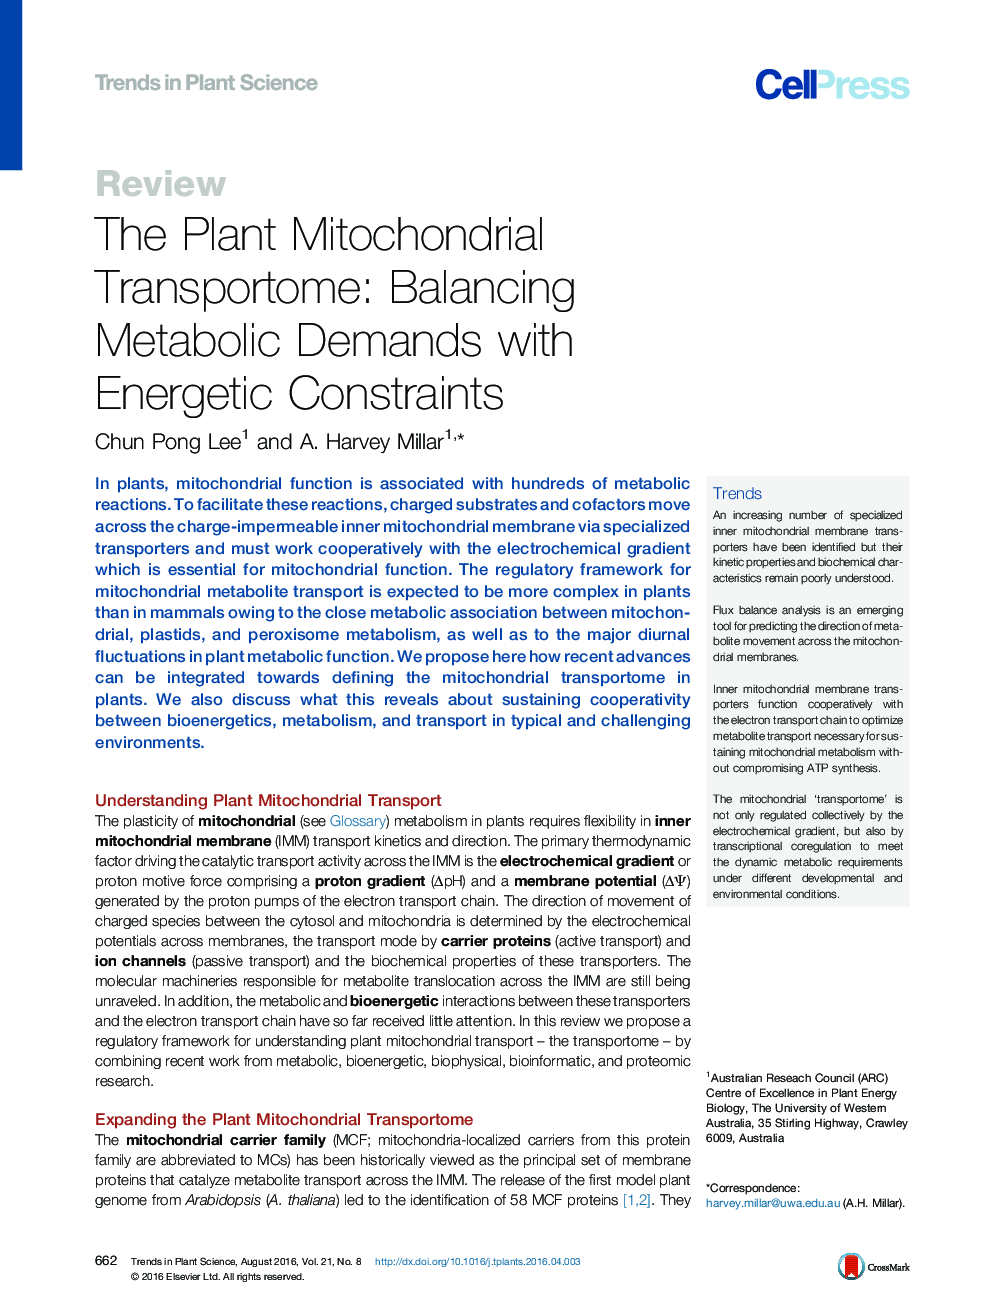 ترانسفورماتور میتوکندری گیاهی: تقسیم تقاضای متابولیسم با محدودیت های انرژی 